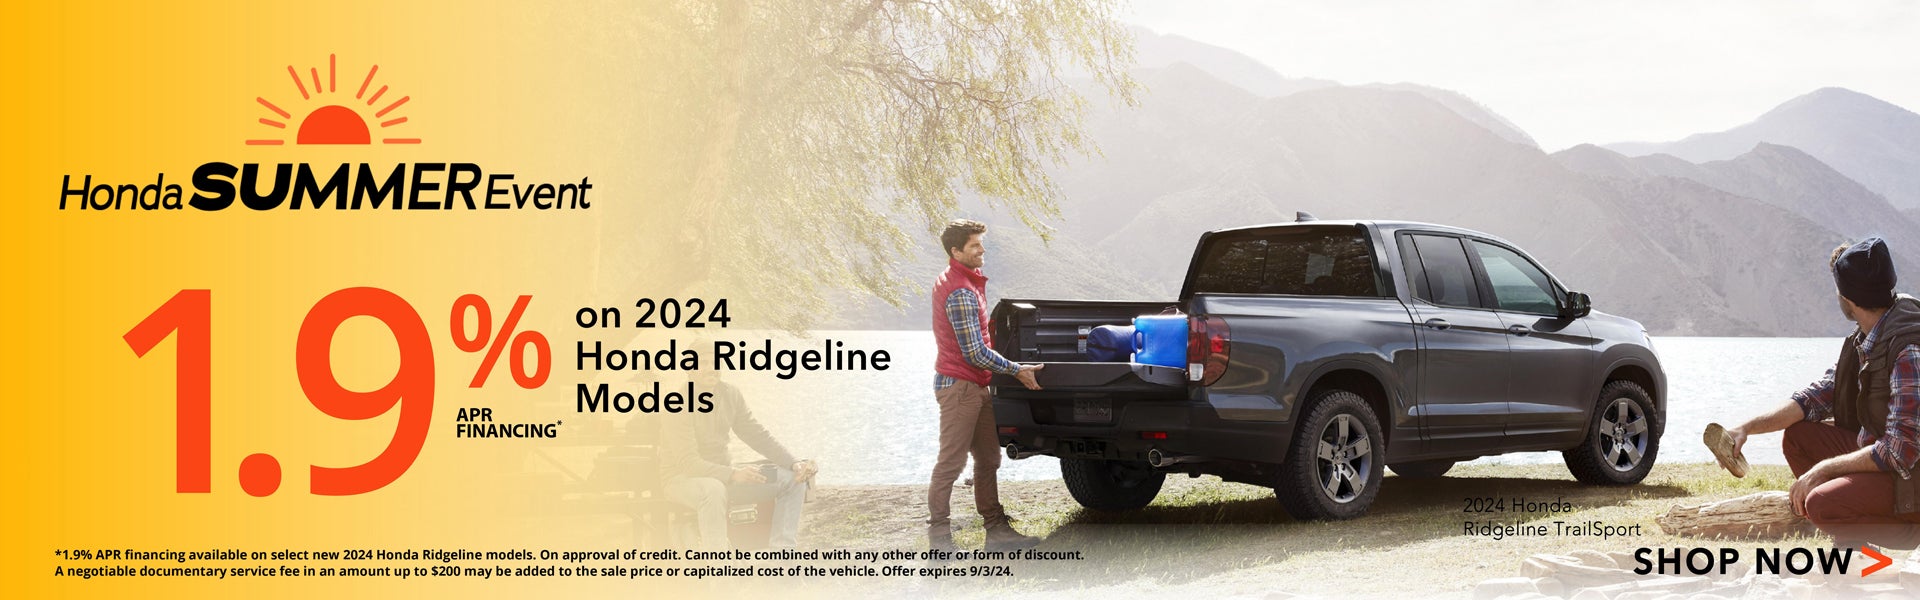 2024 Honda Ridgeline APR Offer